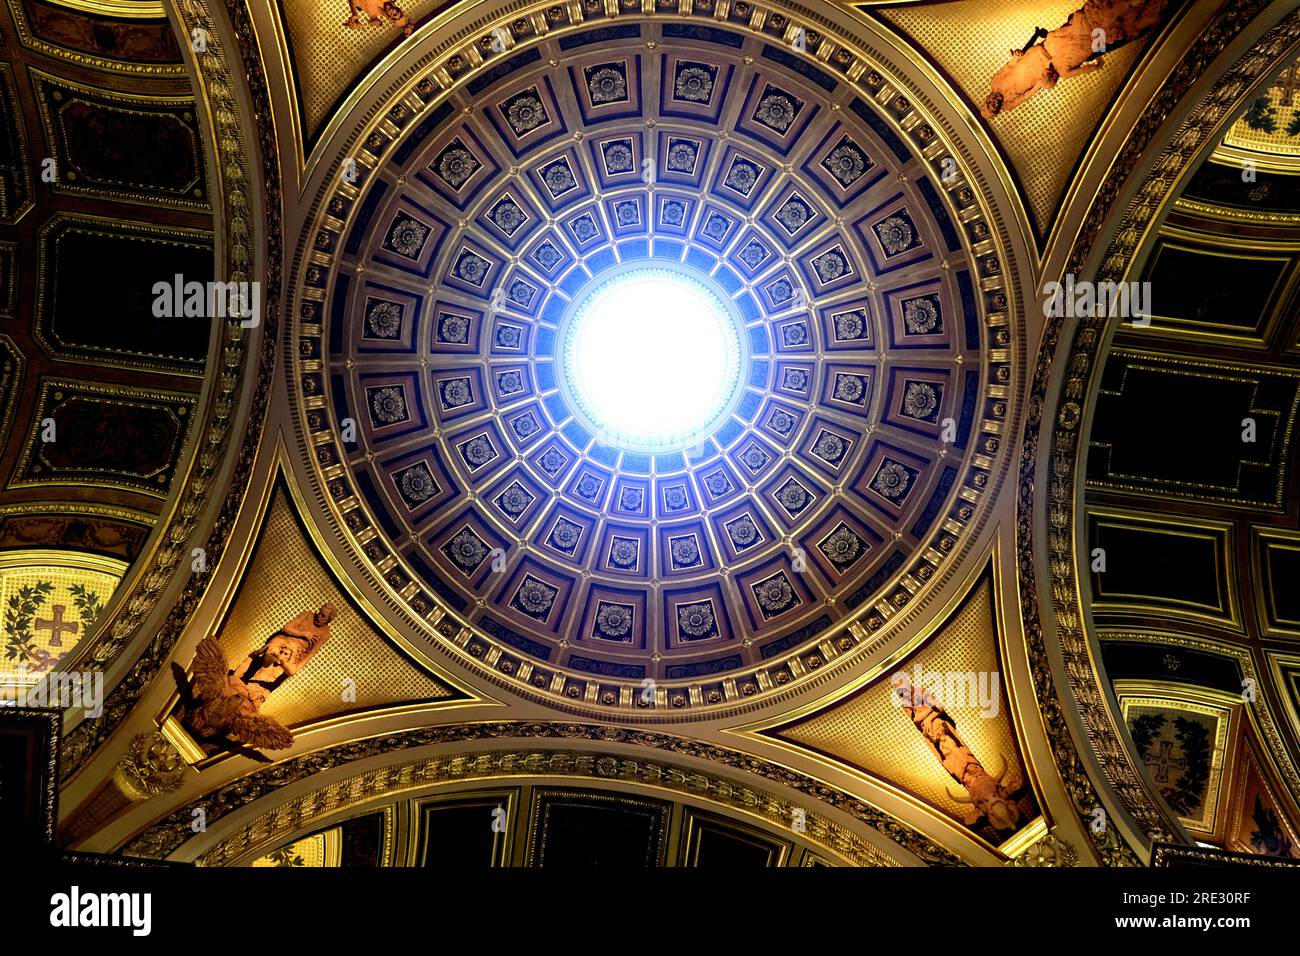 Oculus dans la cathédrale Saint Pierre de Rennes Bretagne France Banque D'Images